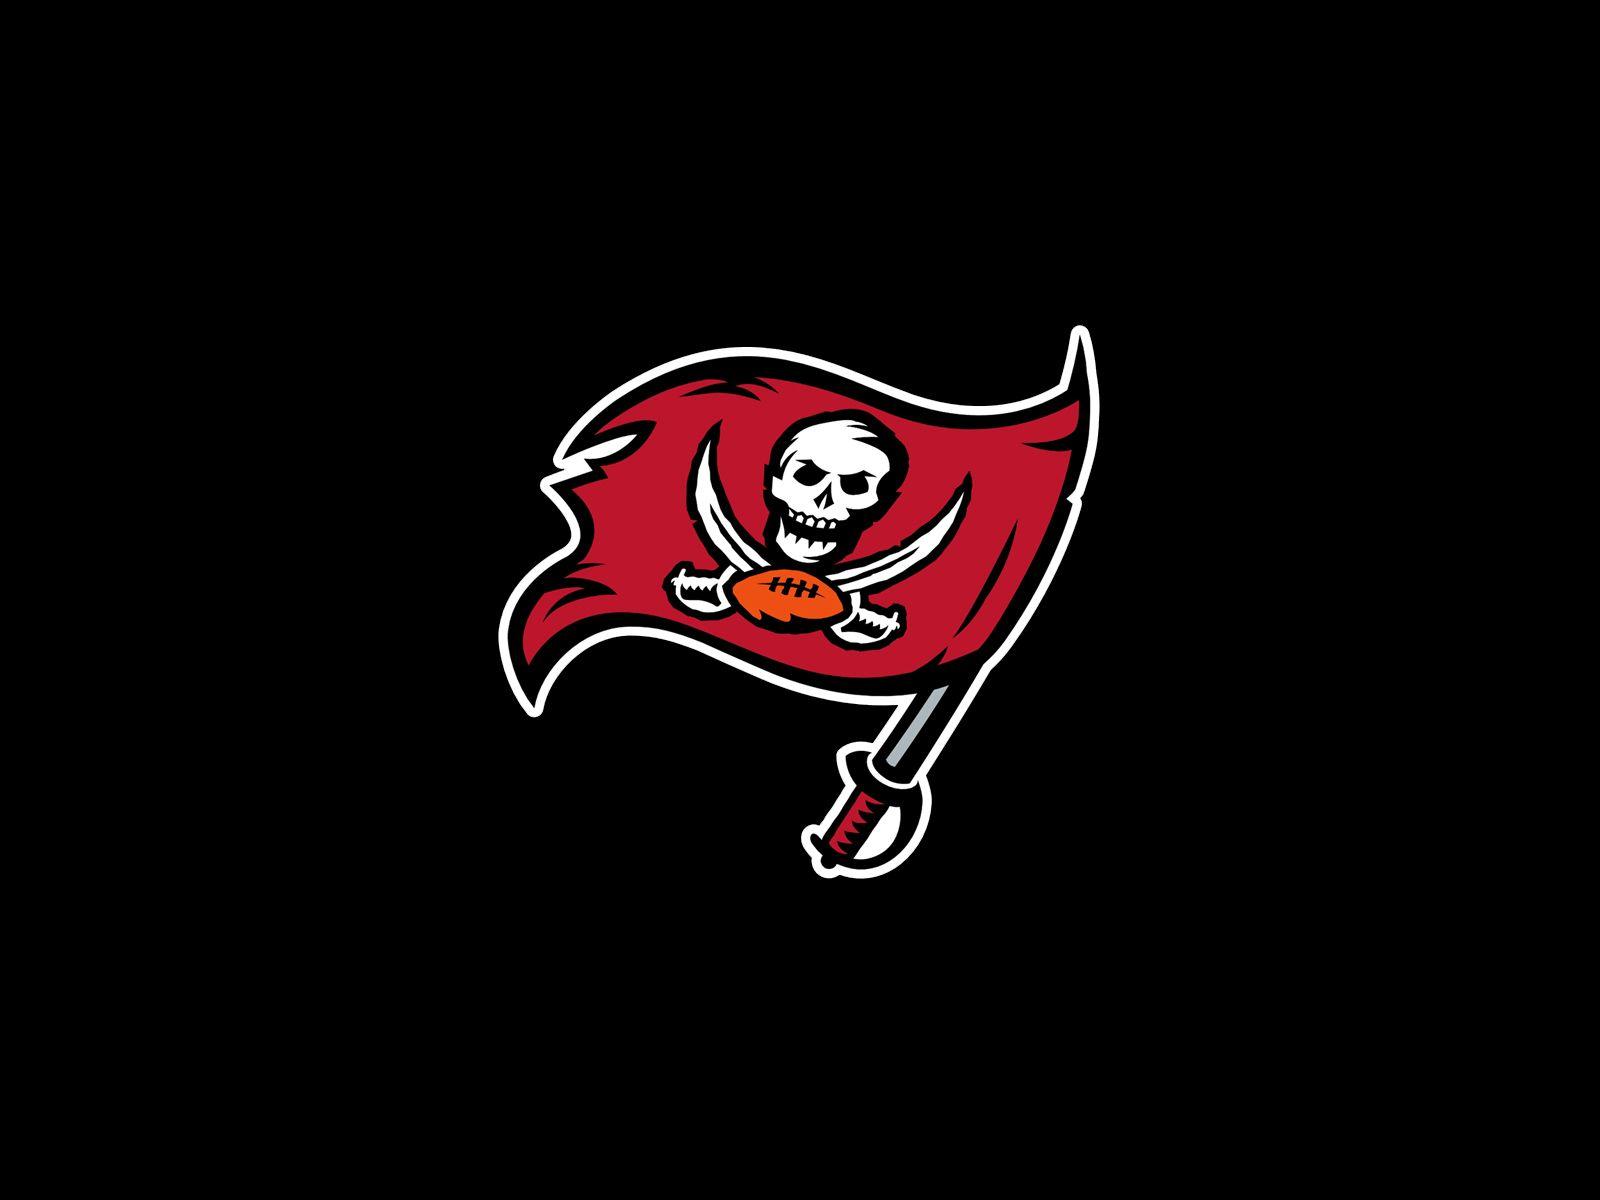 NFL Buccaneers Logo - Tampa bay buccaneers Logos